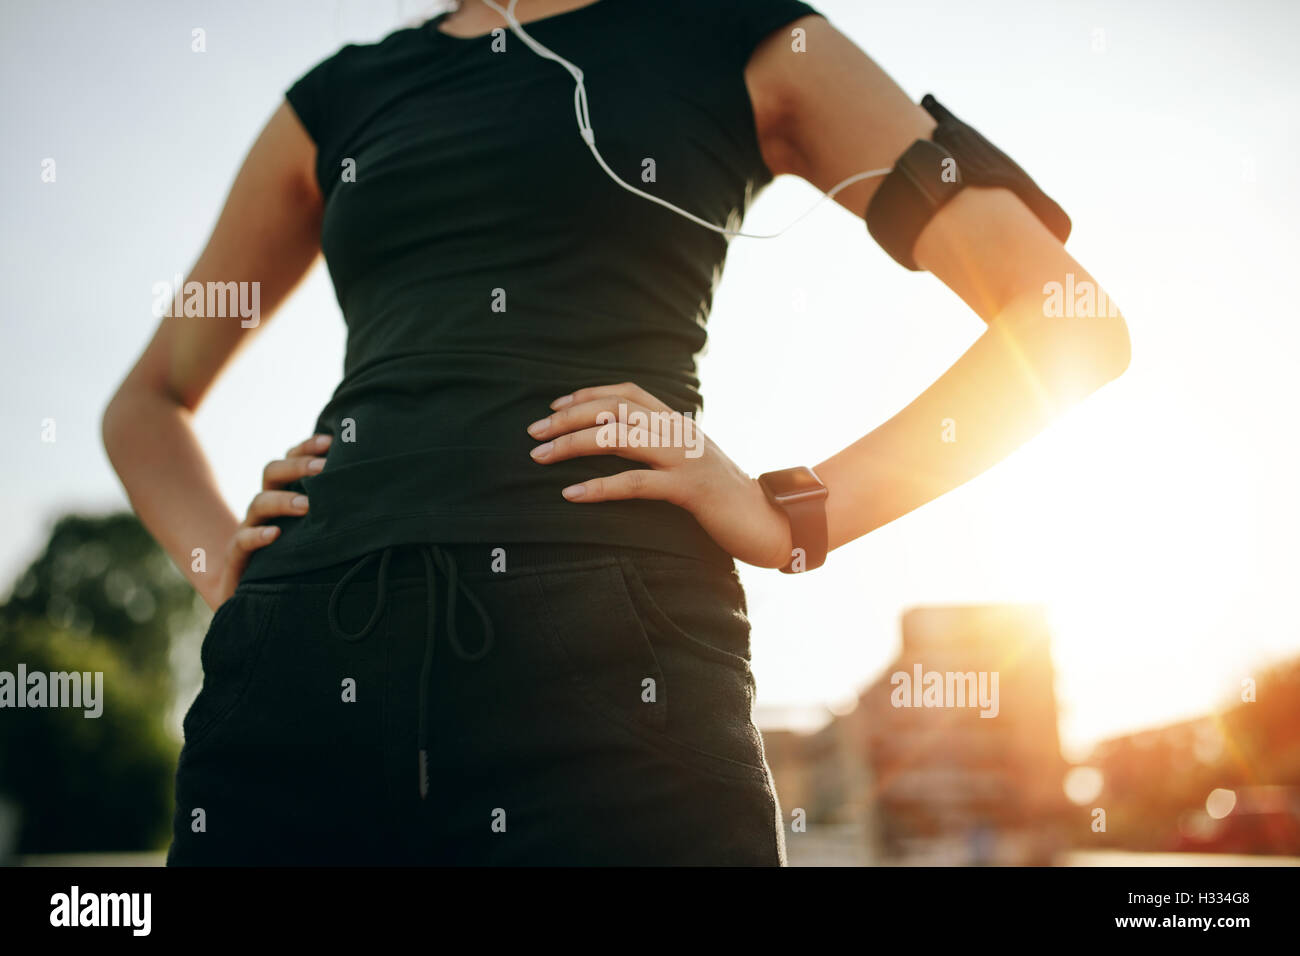 Schuss von Fit junge Frau mit ihren Händen auf den Hüften beschnitten. Urban Runner im Freien in sonnigen Morgen. Stockfoto